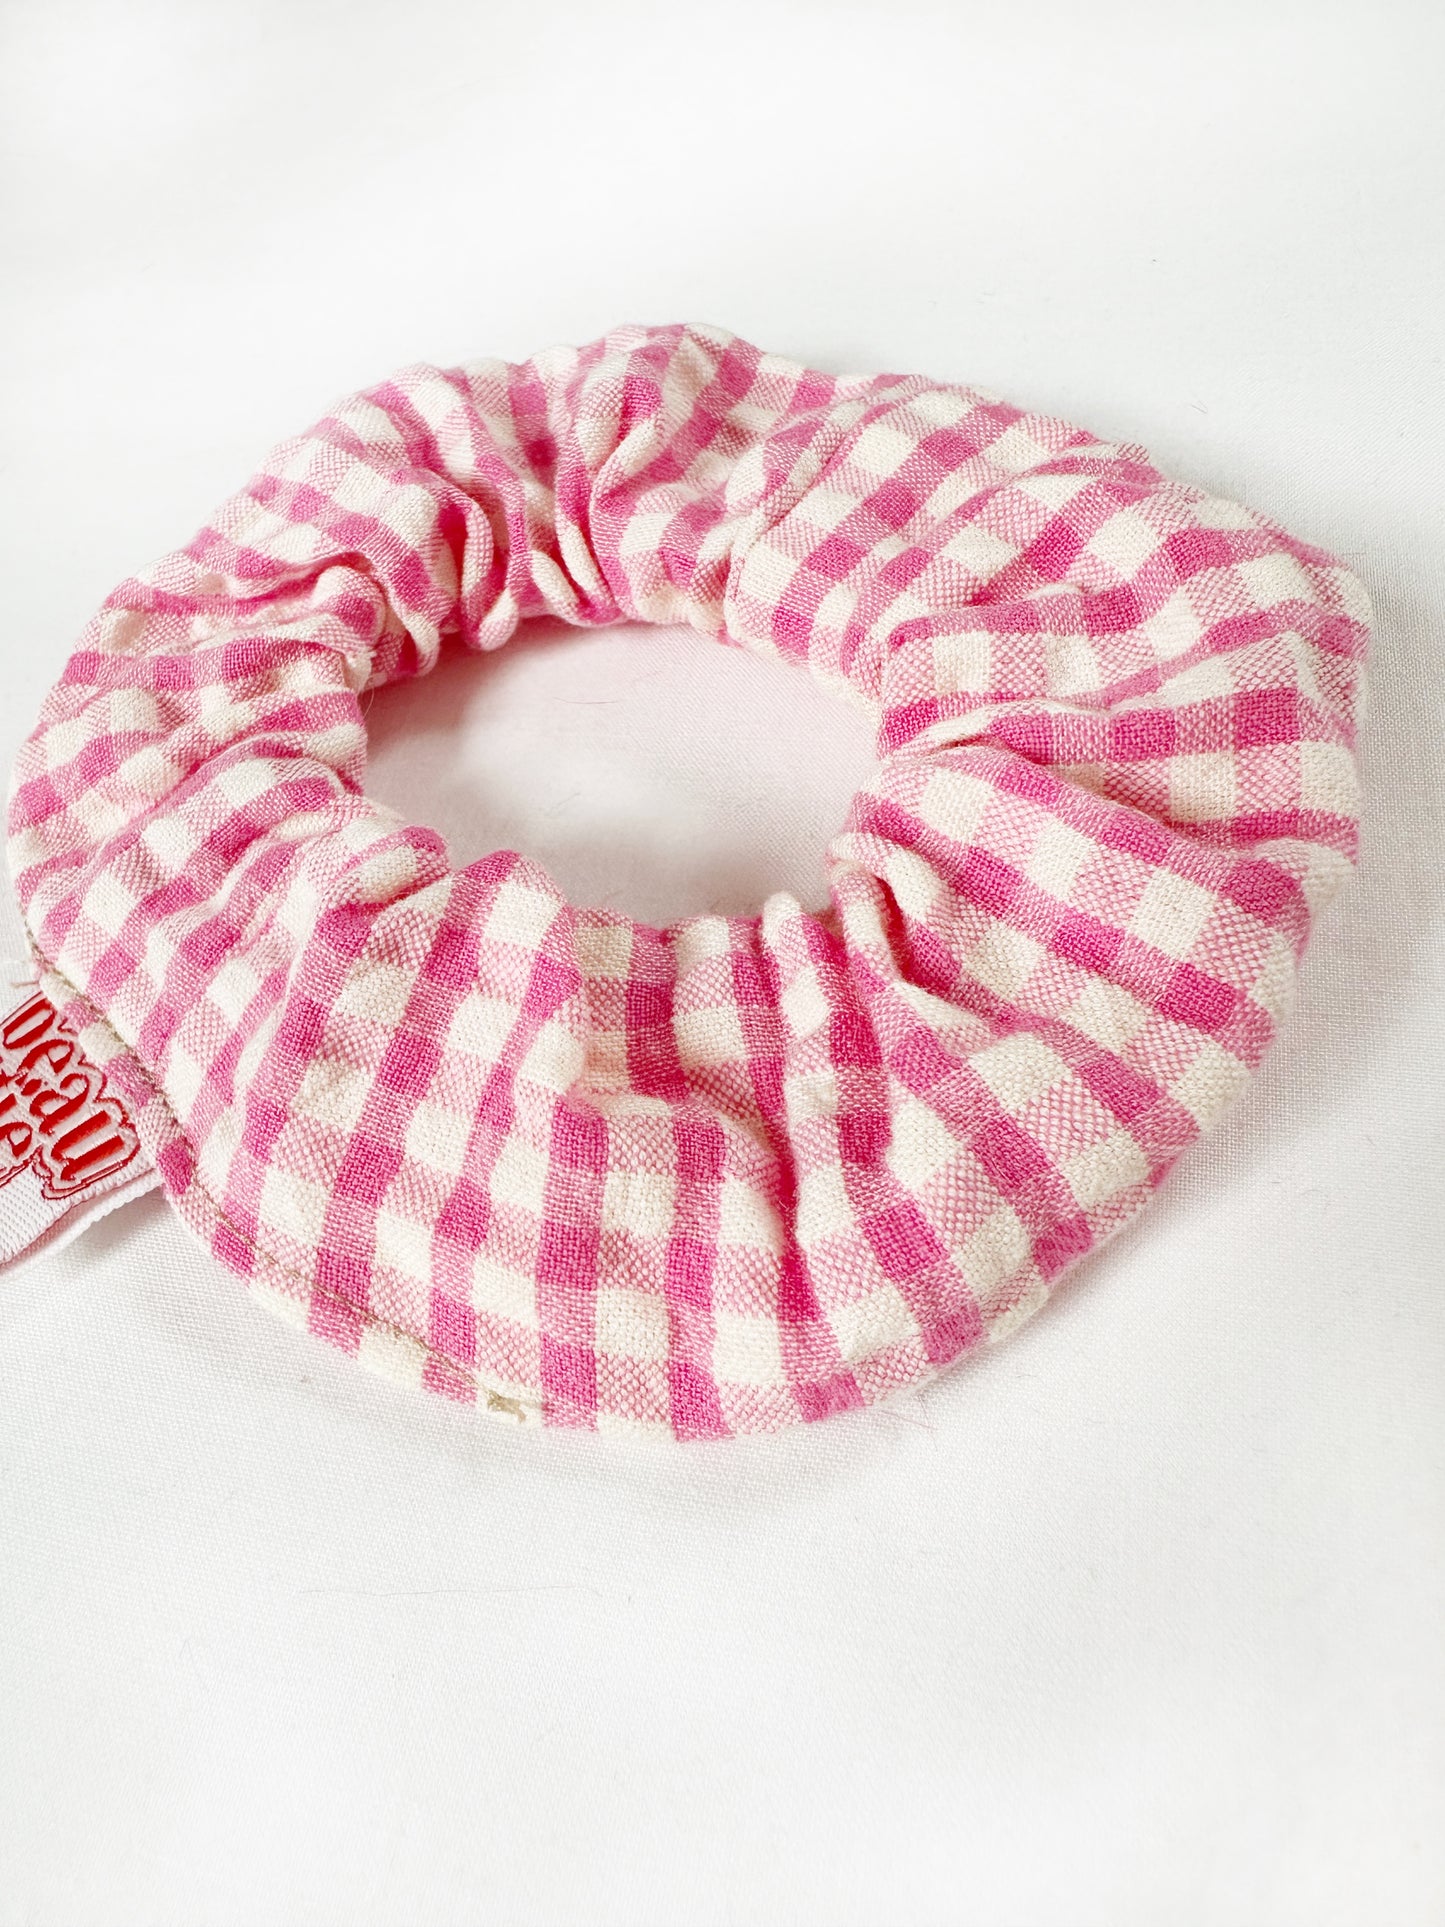 Mini scrunchie in pink gingham